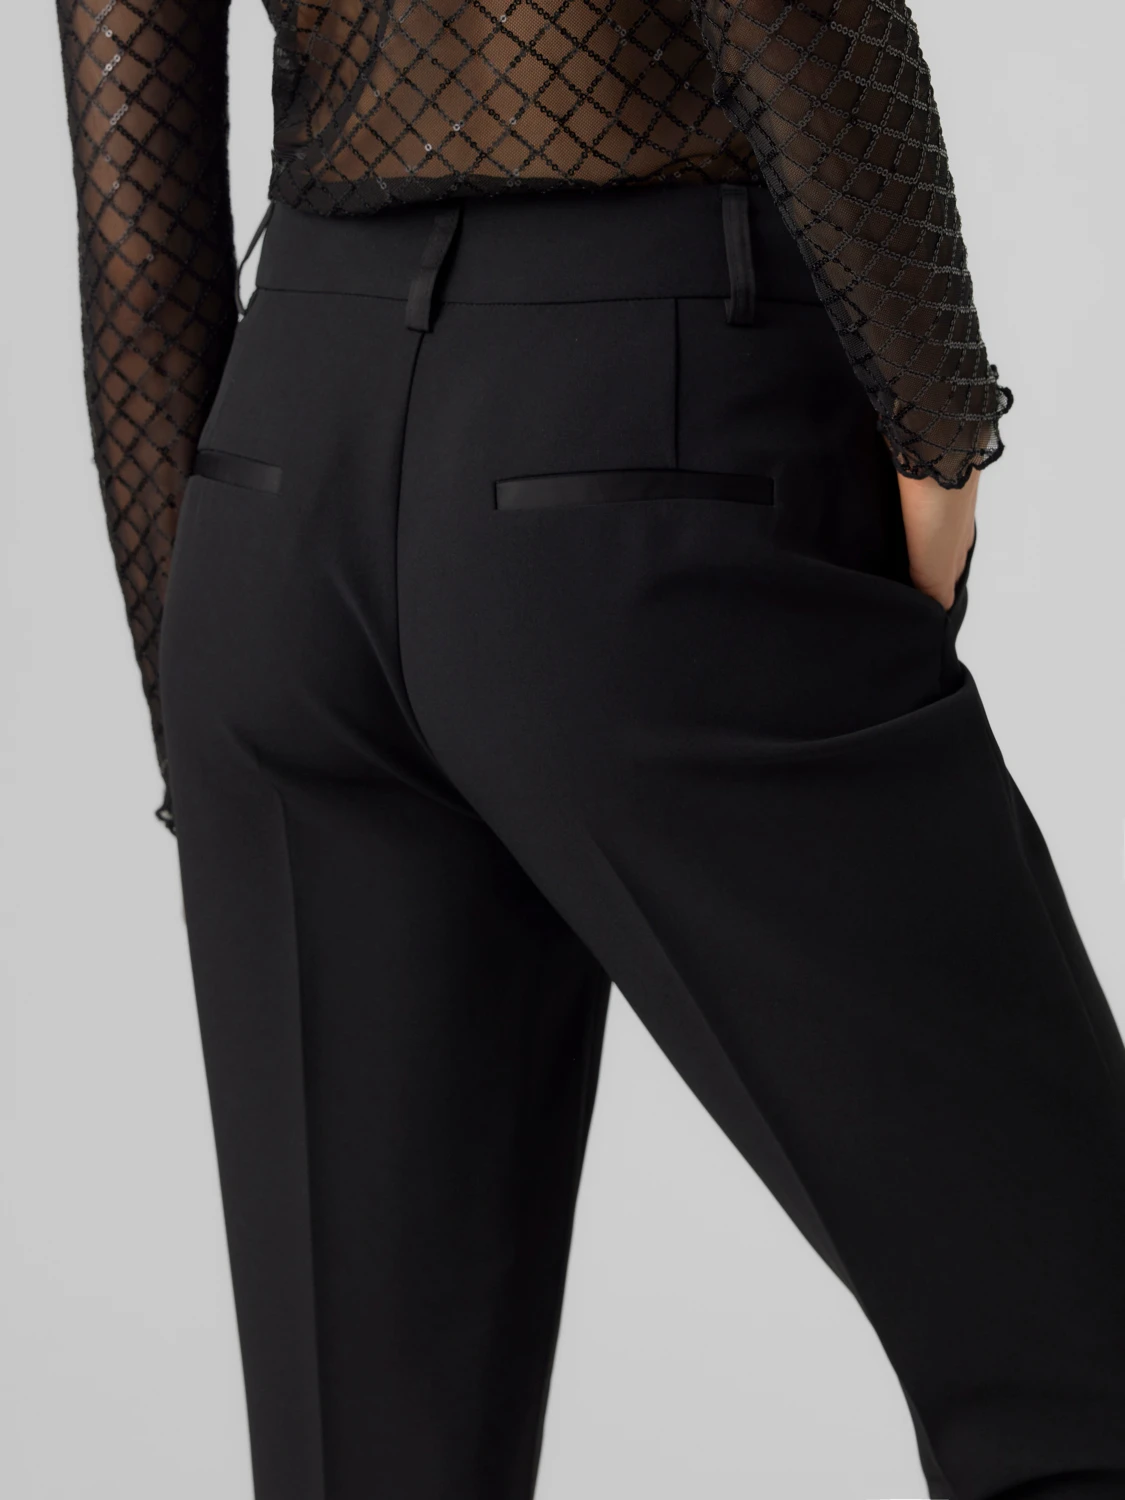 Παντελόνι μαύρο κουστουμιού Vero Moda